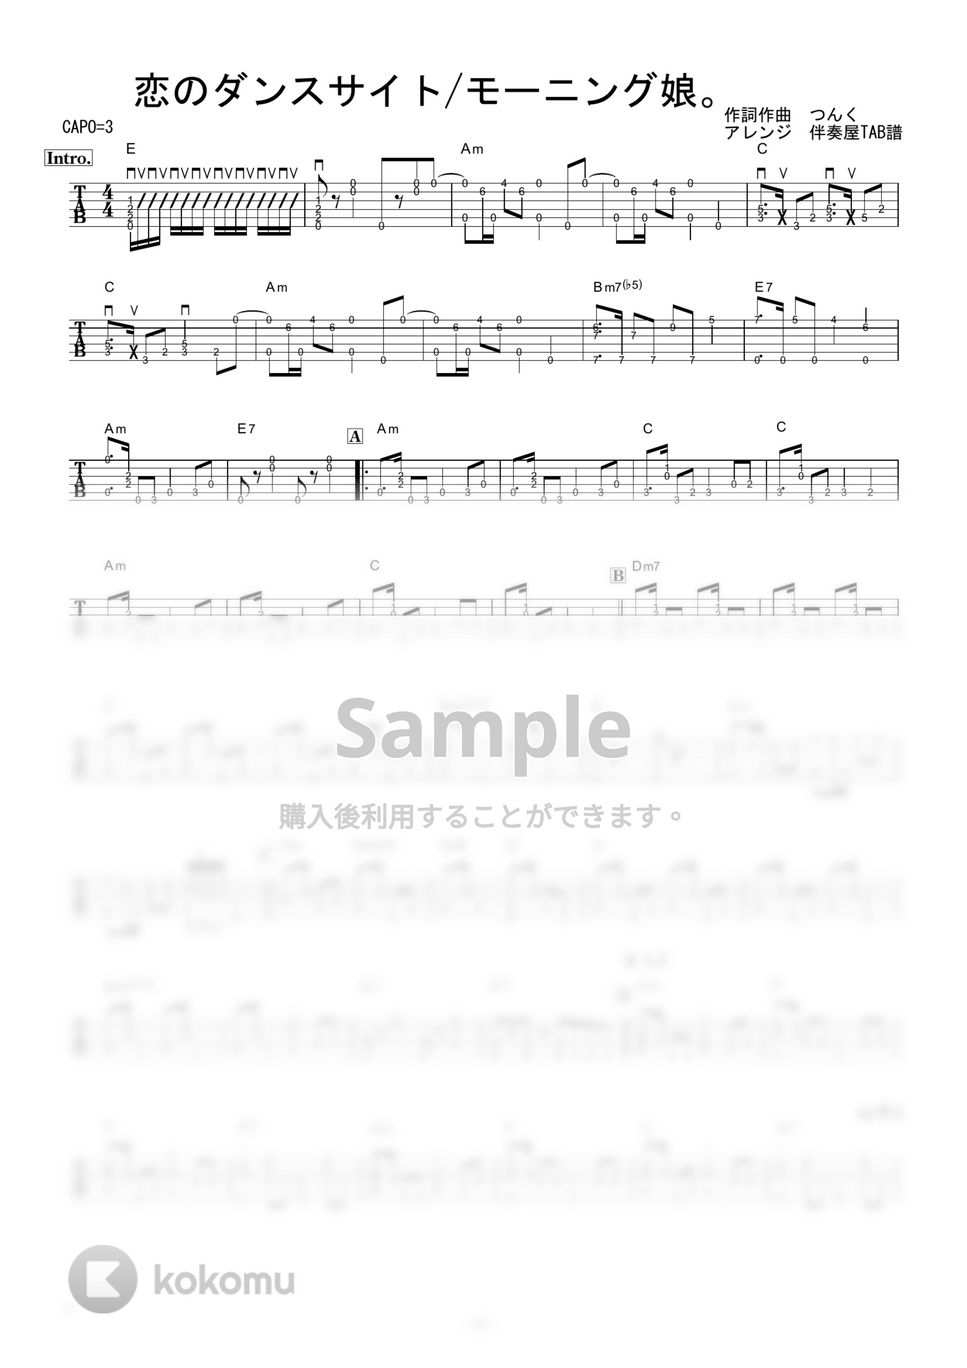 モーニング娘。 - 恋のダンスサイト (ギター伴奏/イントロ・間奏ソロギター) by 伴奏屋TAB譜